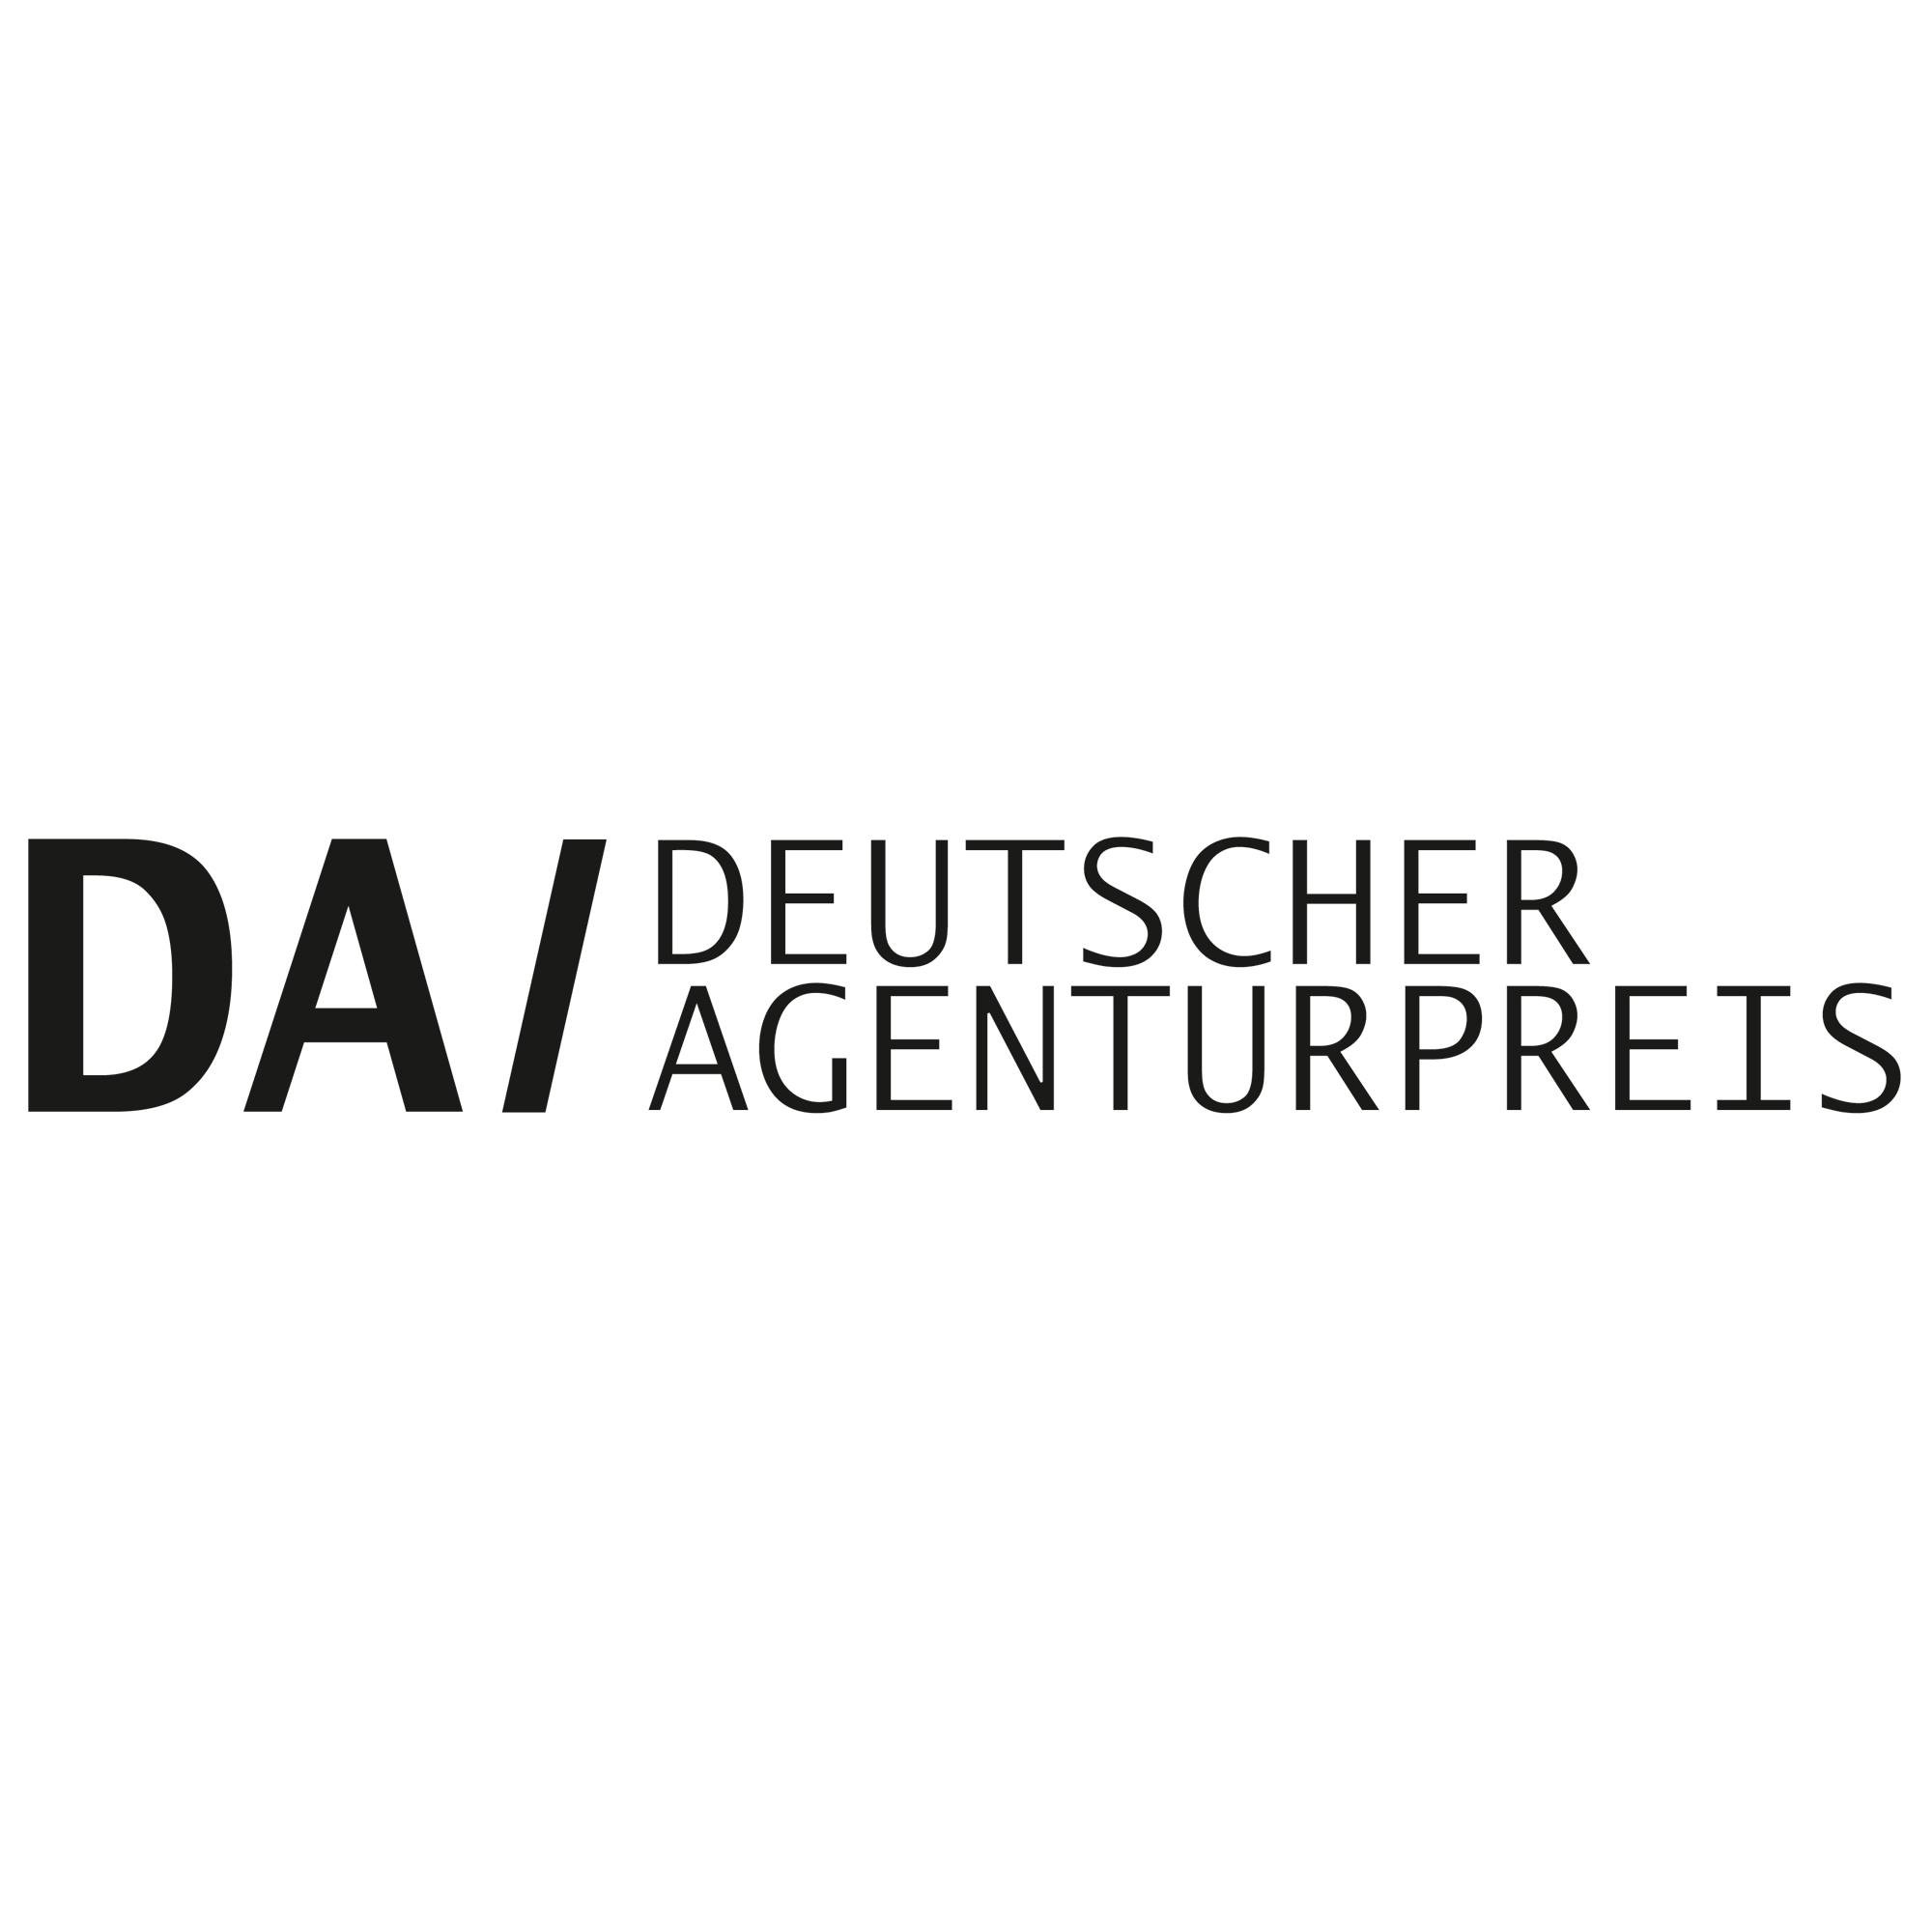 Award: Deutsche Agenturpreis